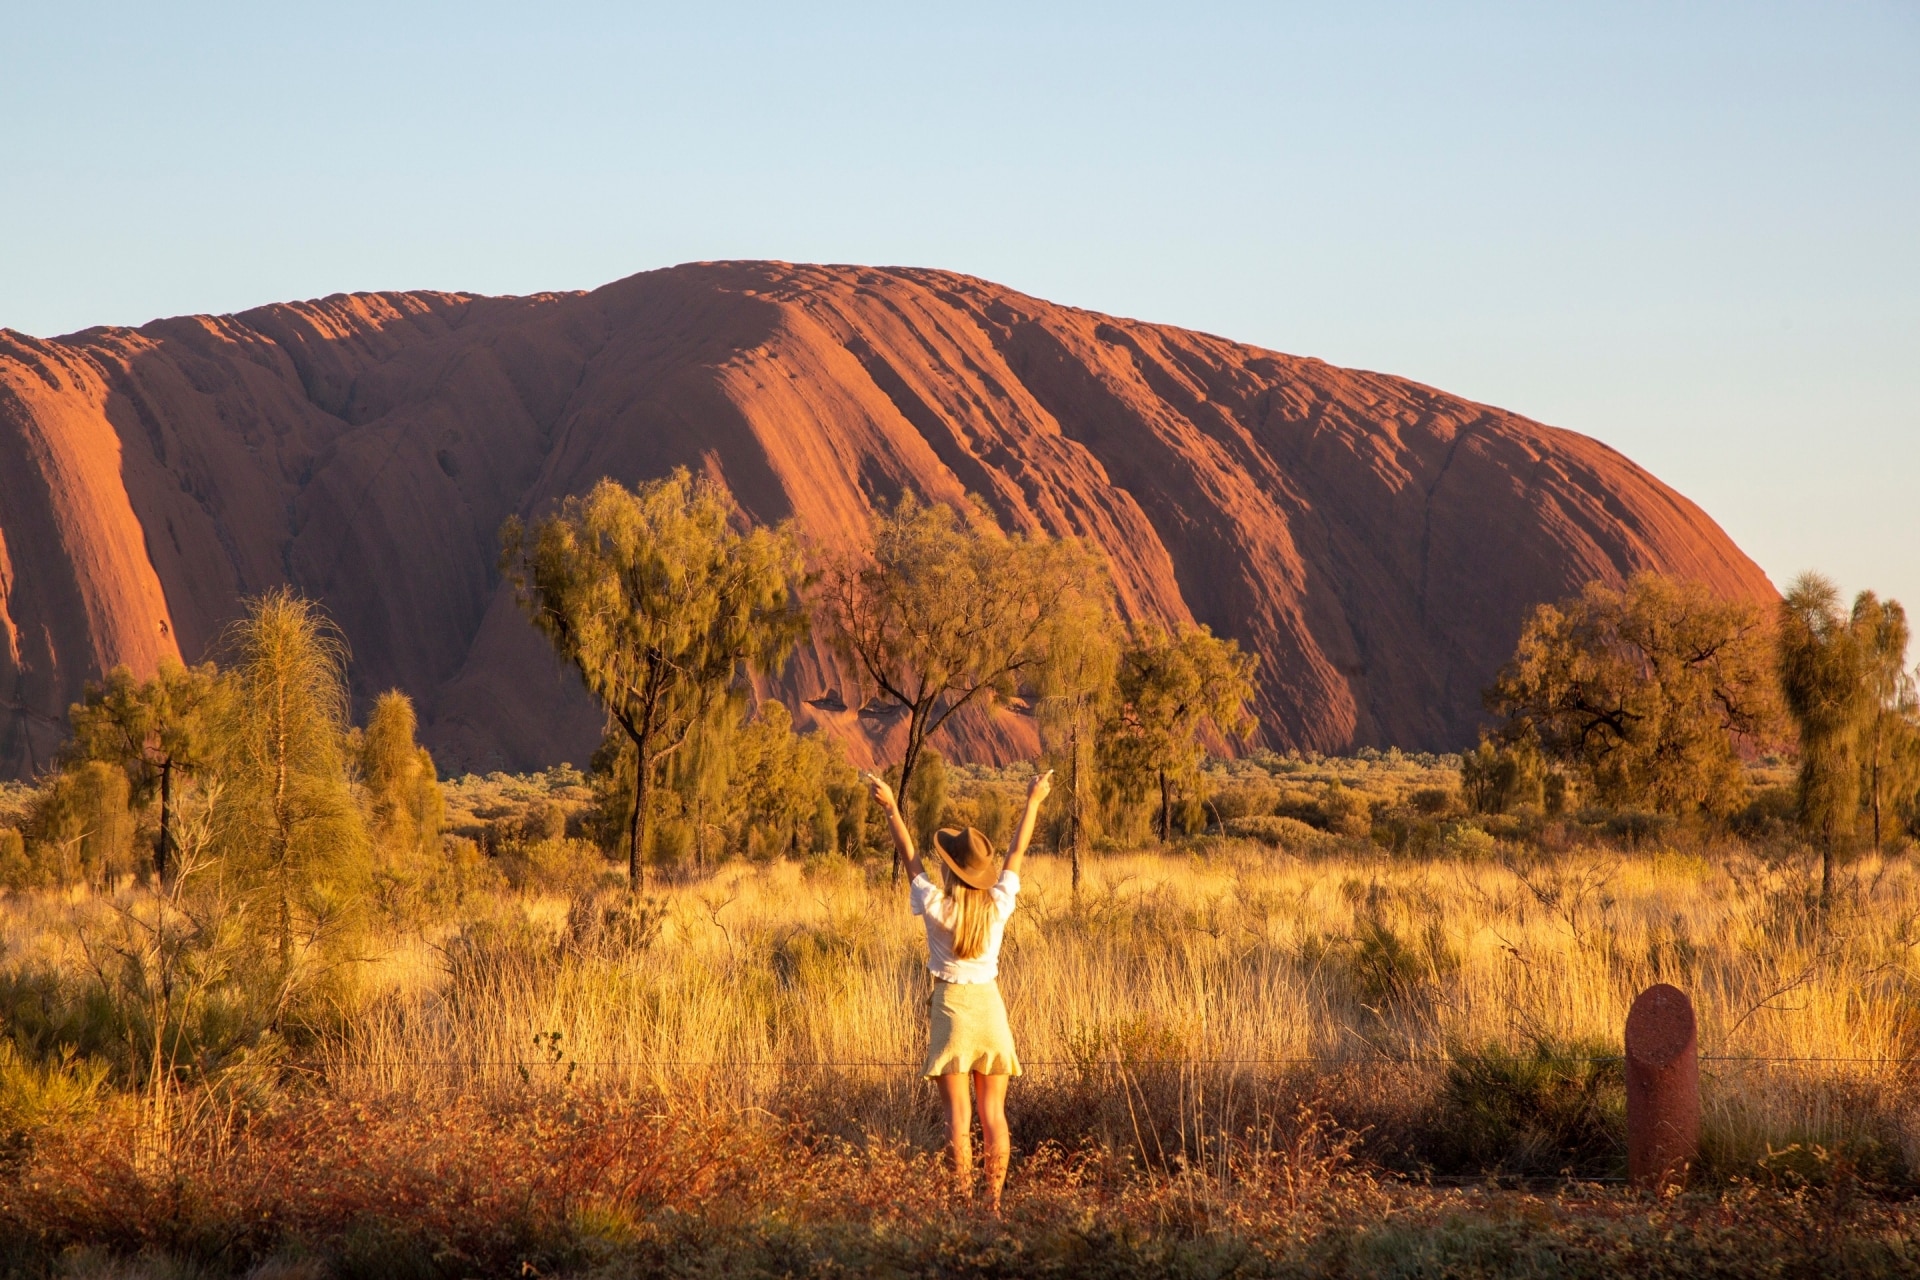 Matahari Terbit, Uluru, Northern Territory © Tourism Australia